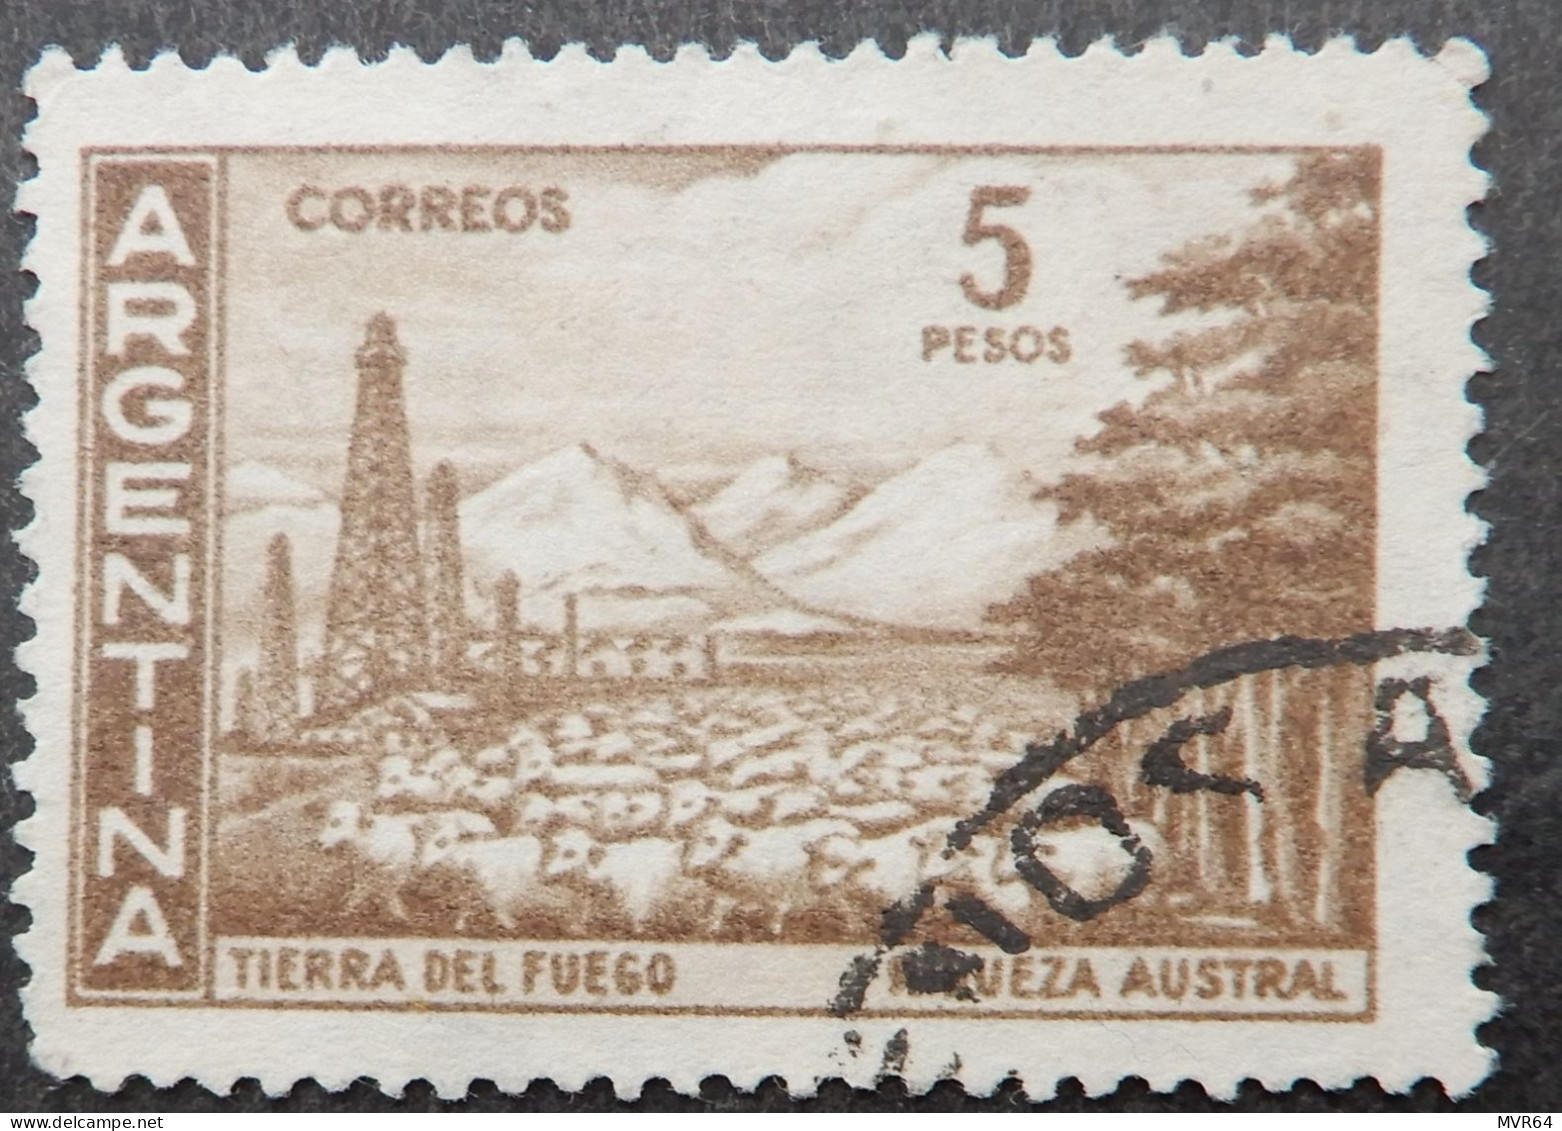 Argentinië Argentinia 1959 1960 (2) Country Views - Oblitérés